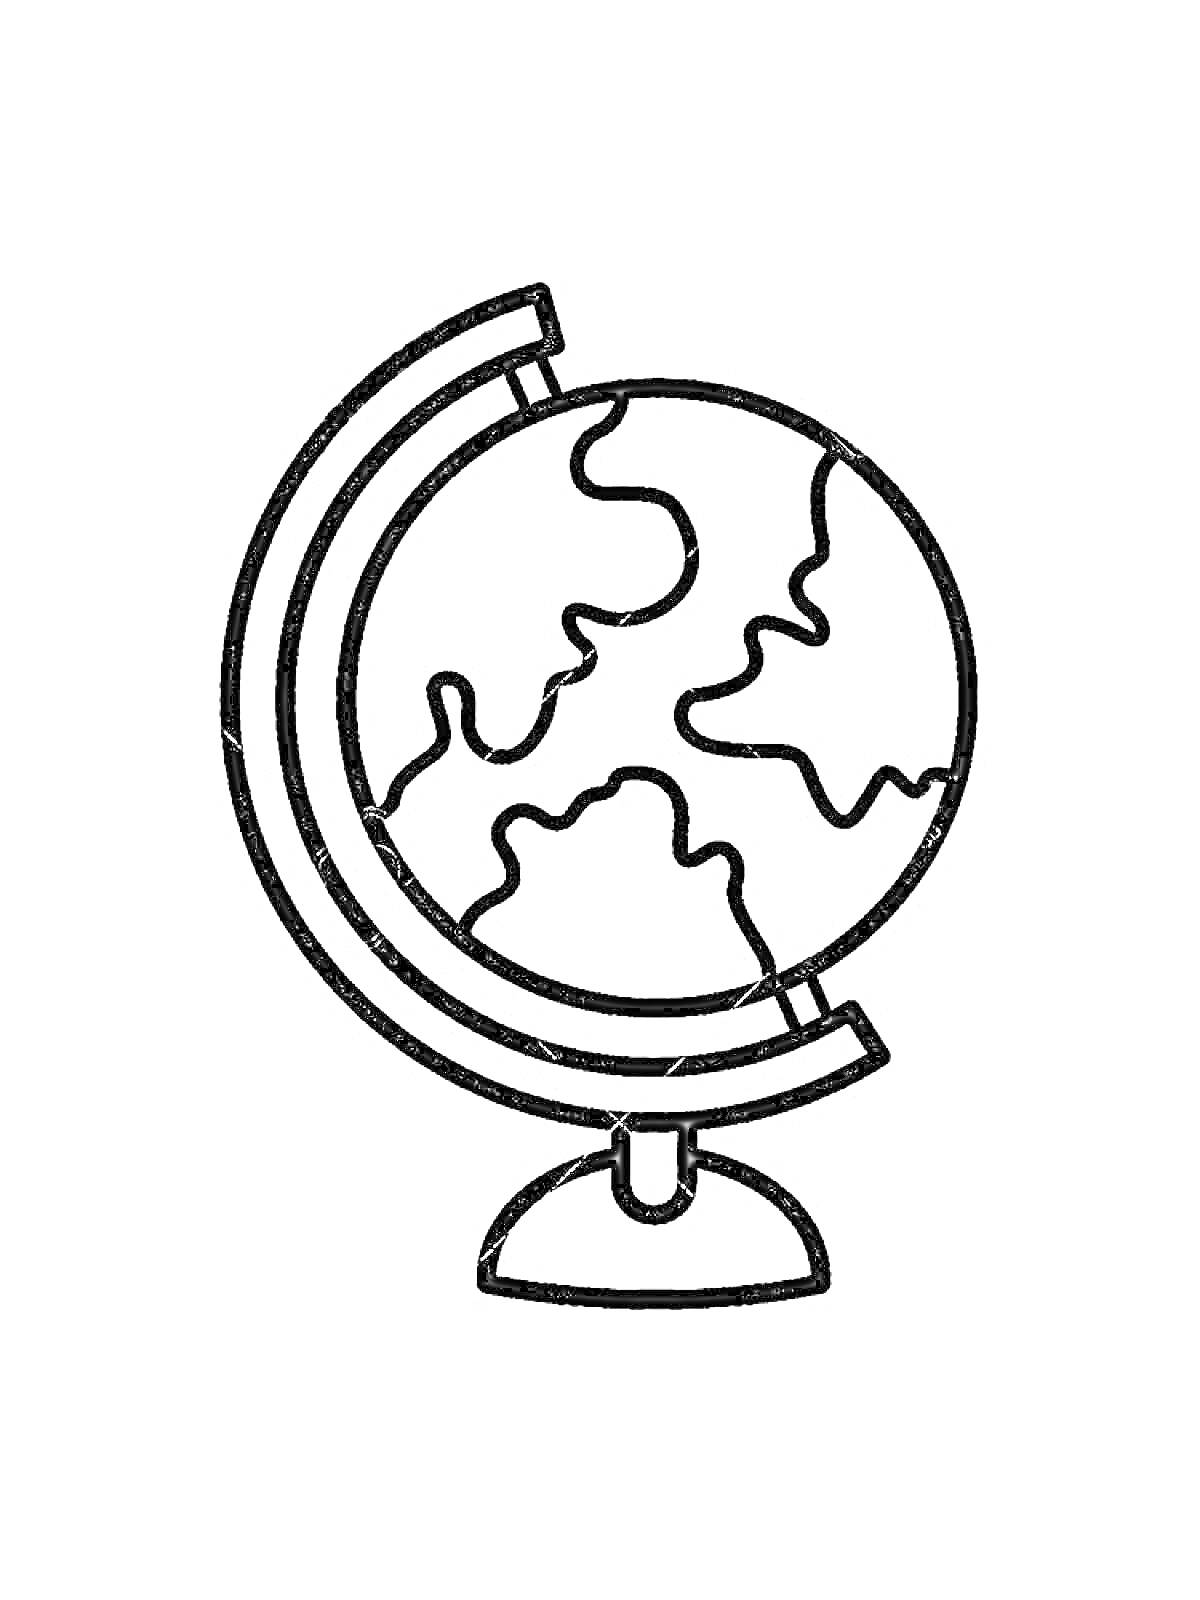 Раскраска Глобус на подставке с картой континентов